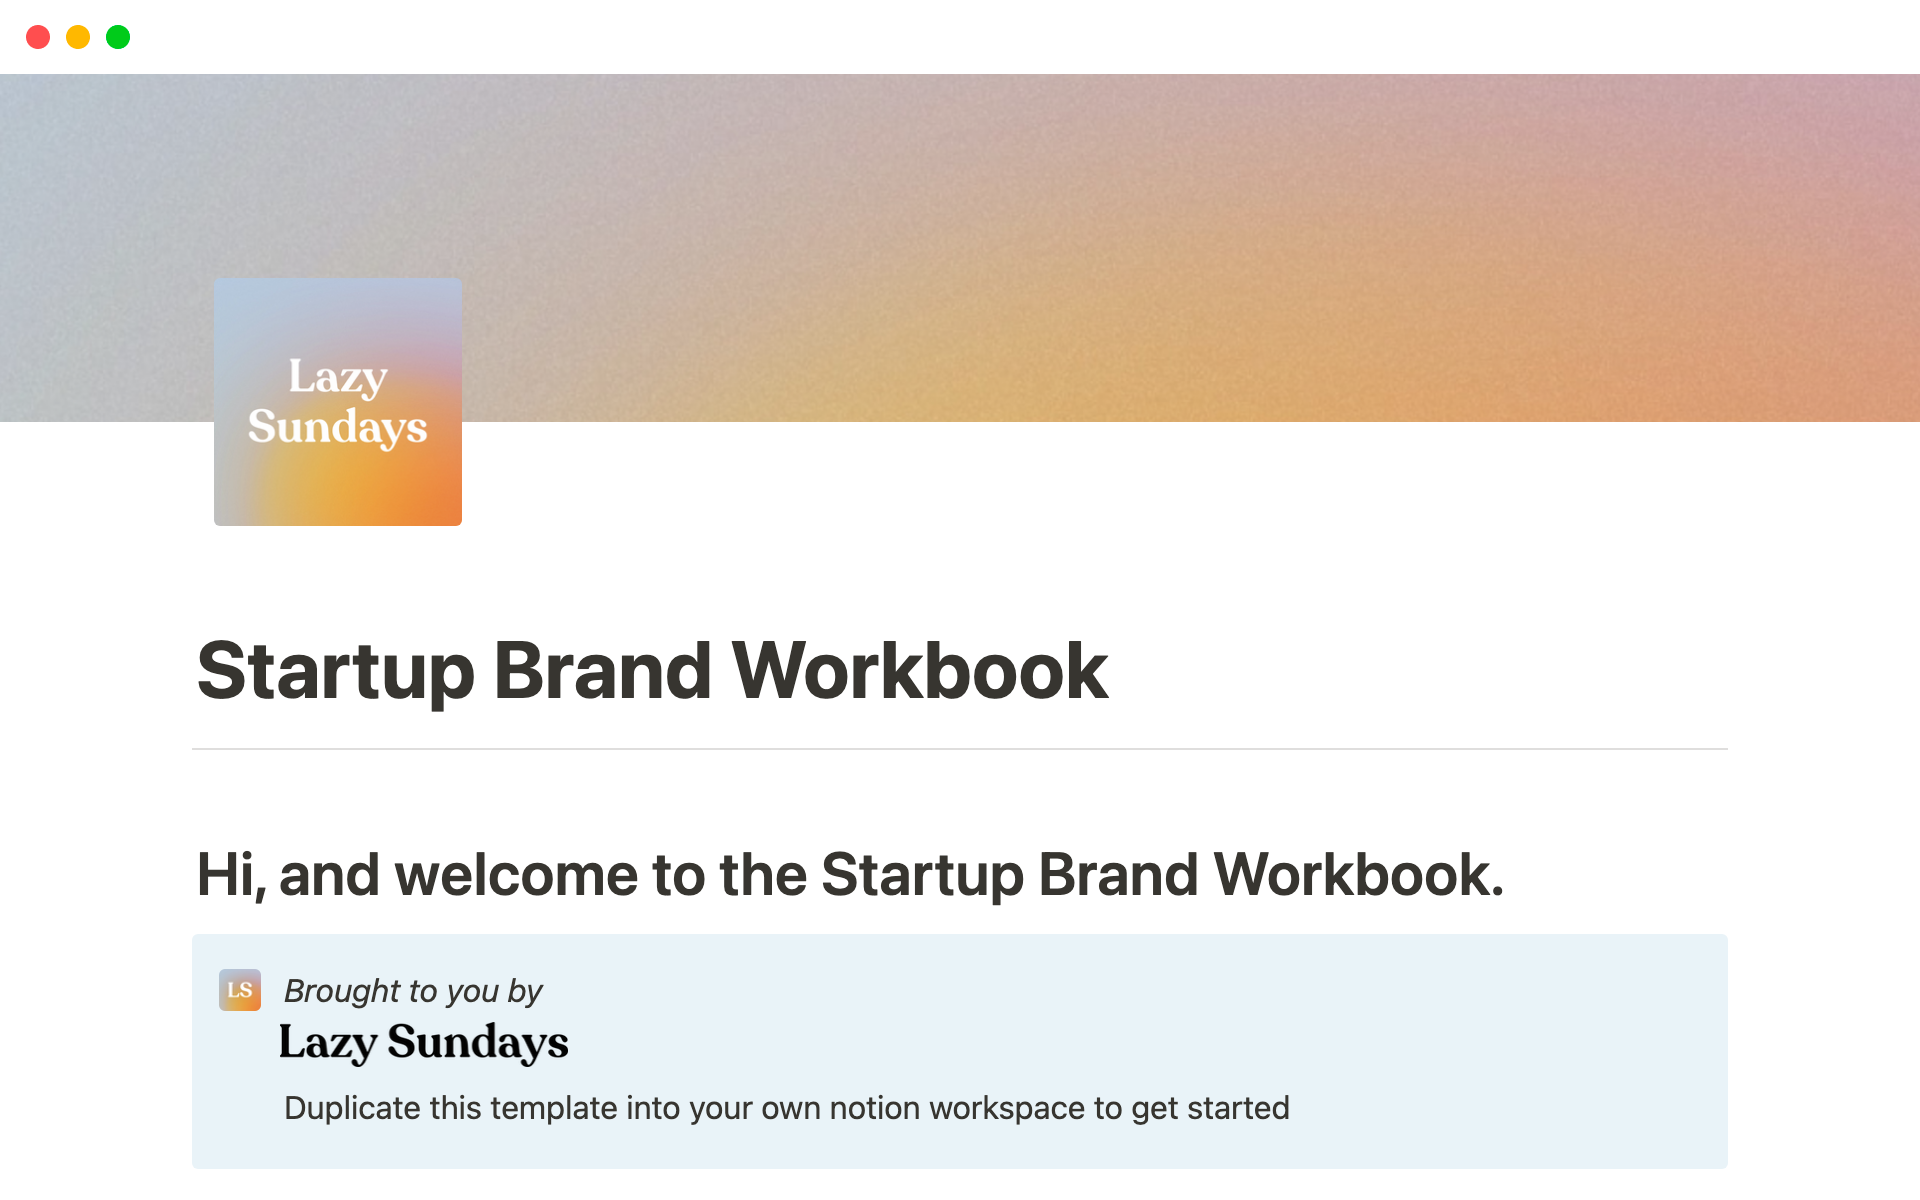 Startup Brand Workbook님의 템플릿 미리보기